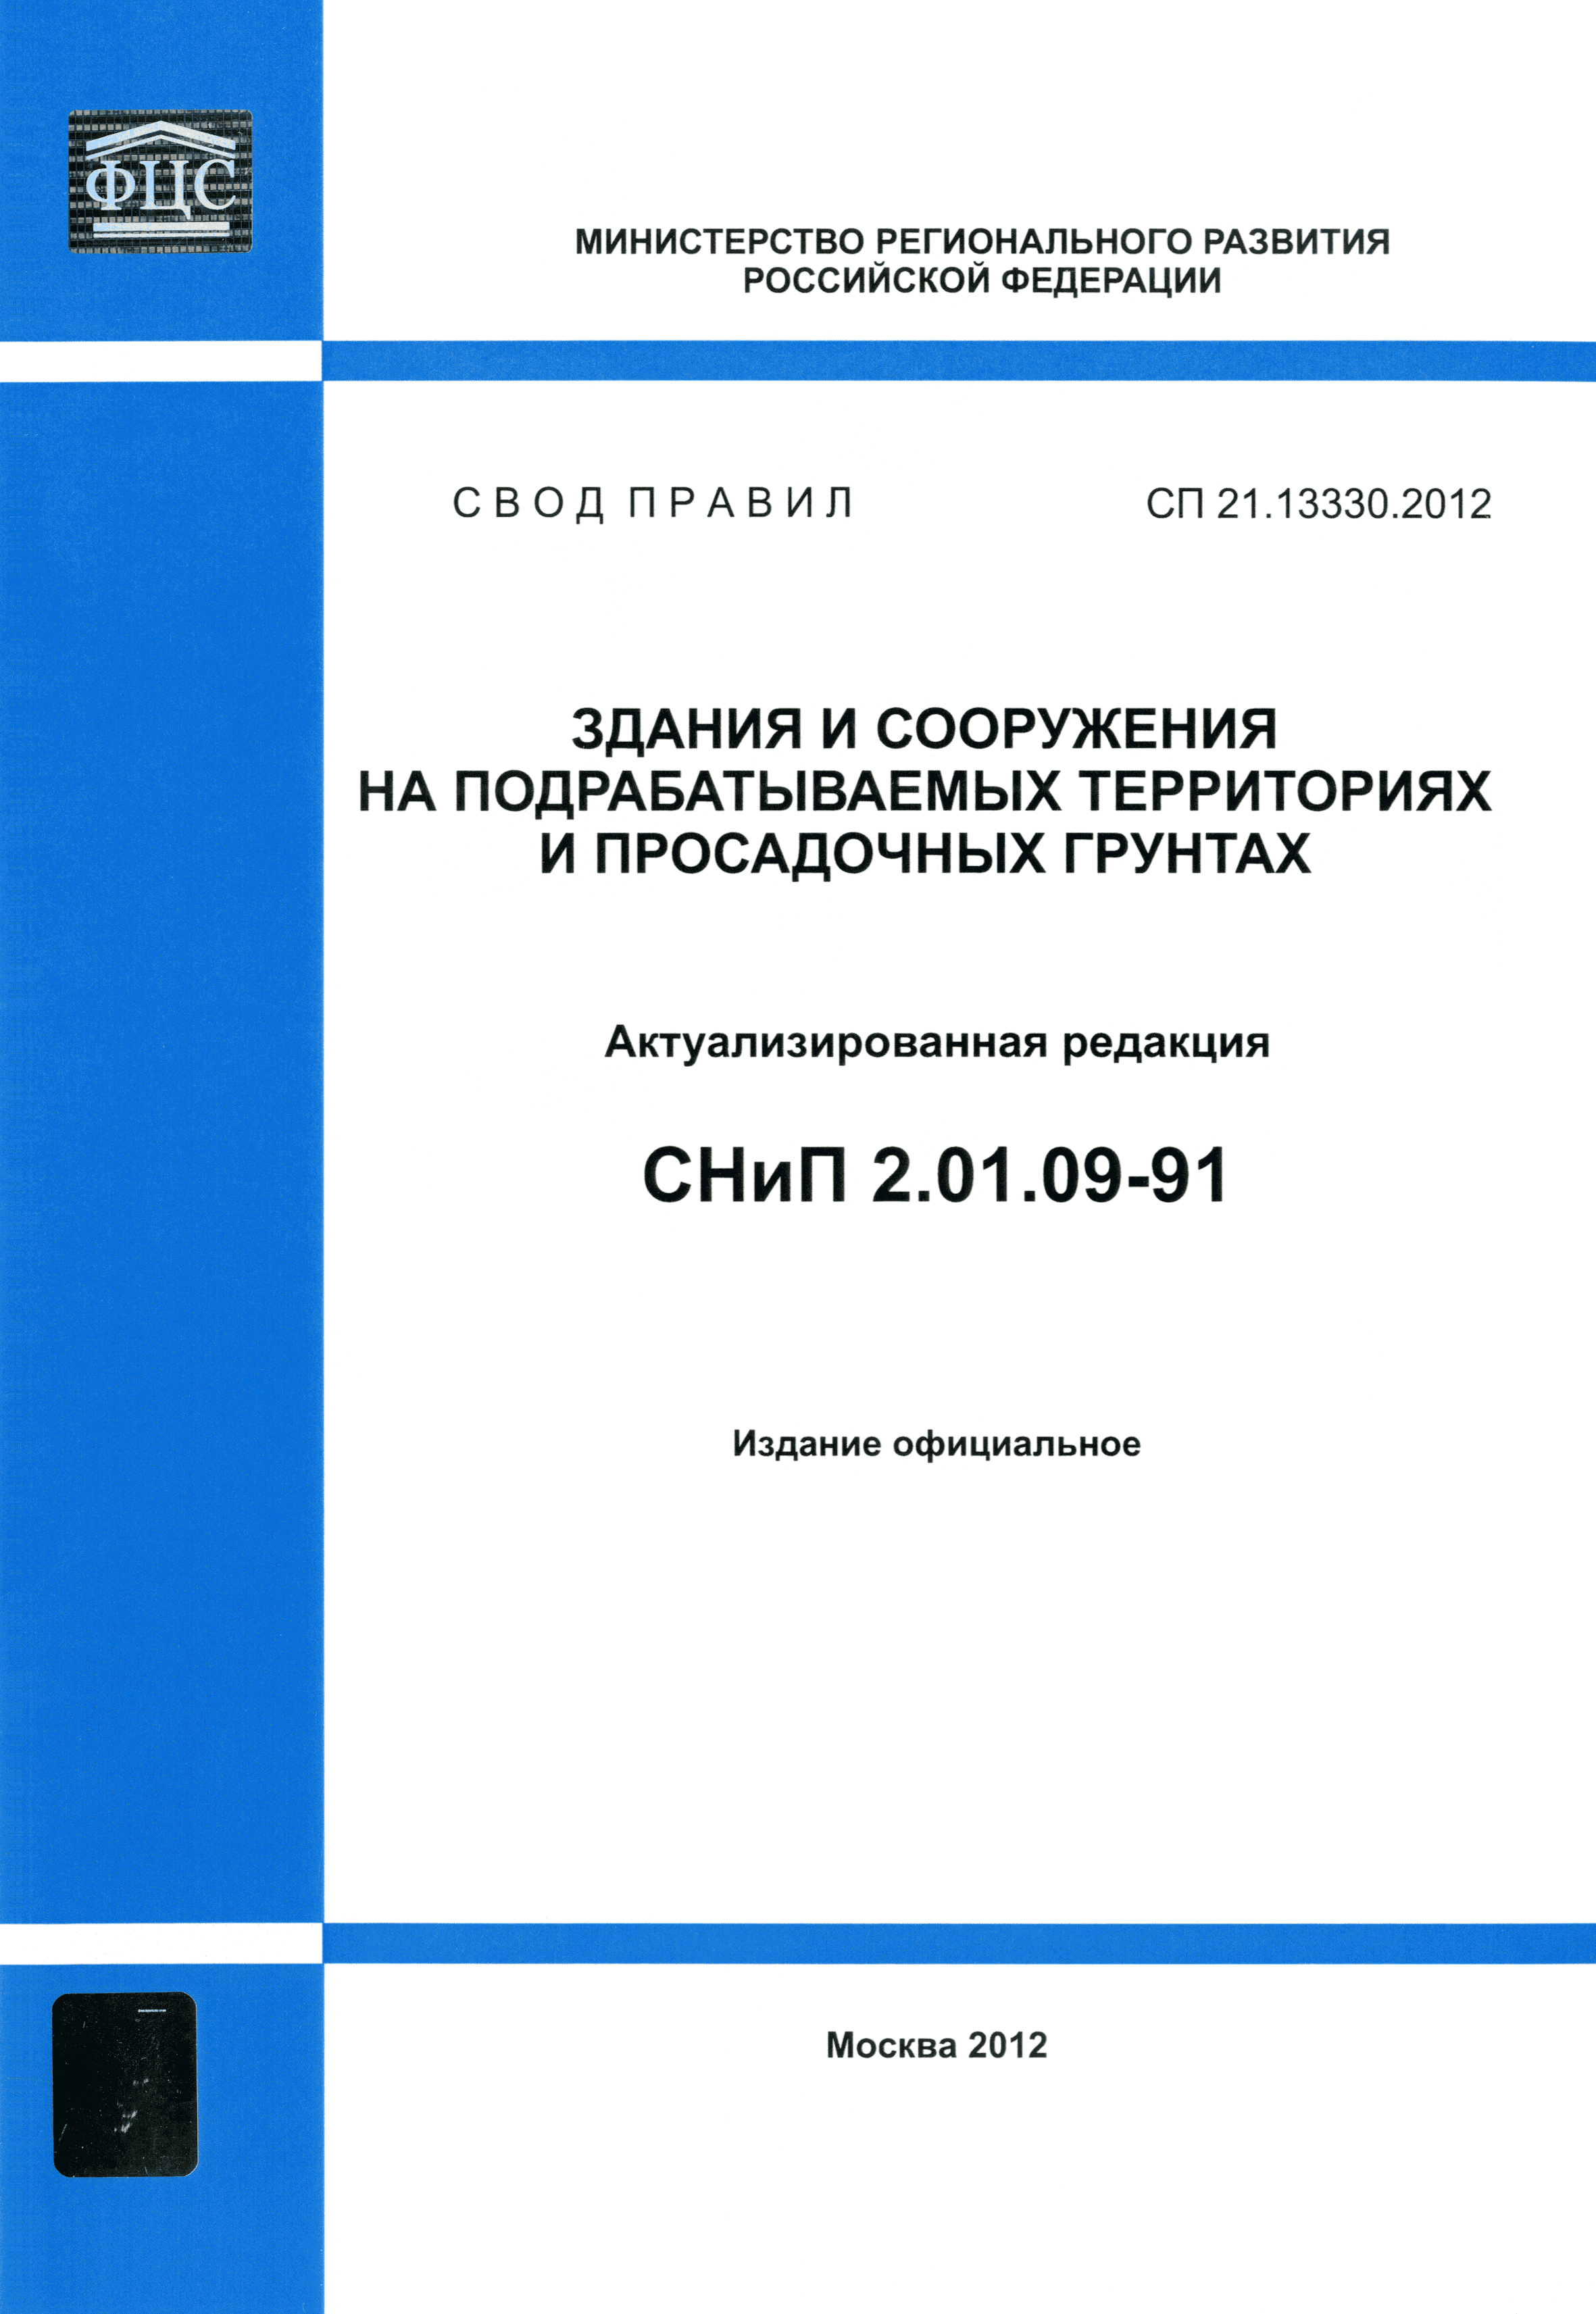 СП 21.13330.2012